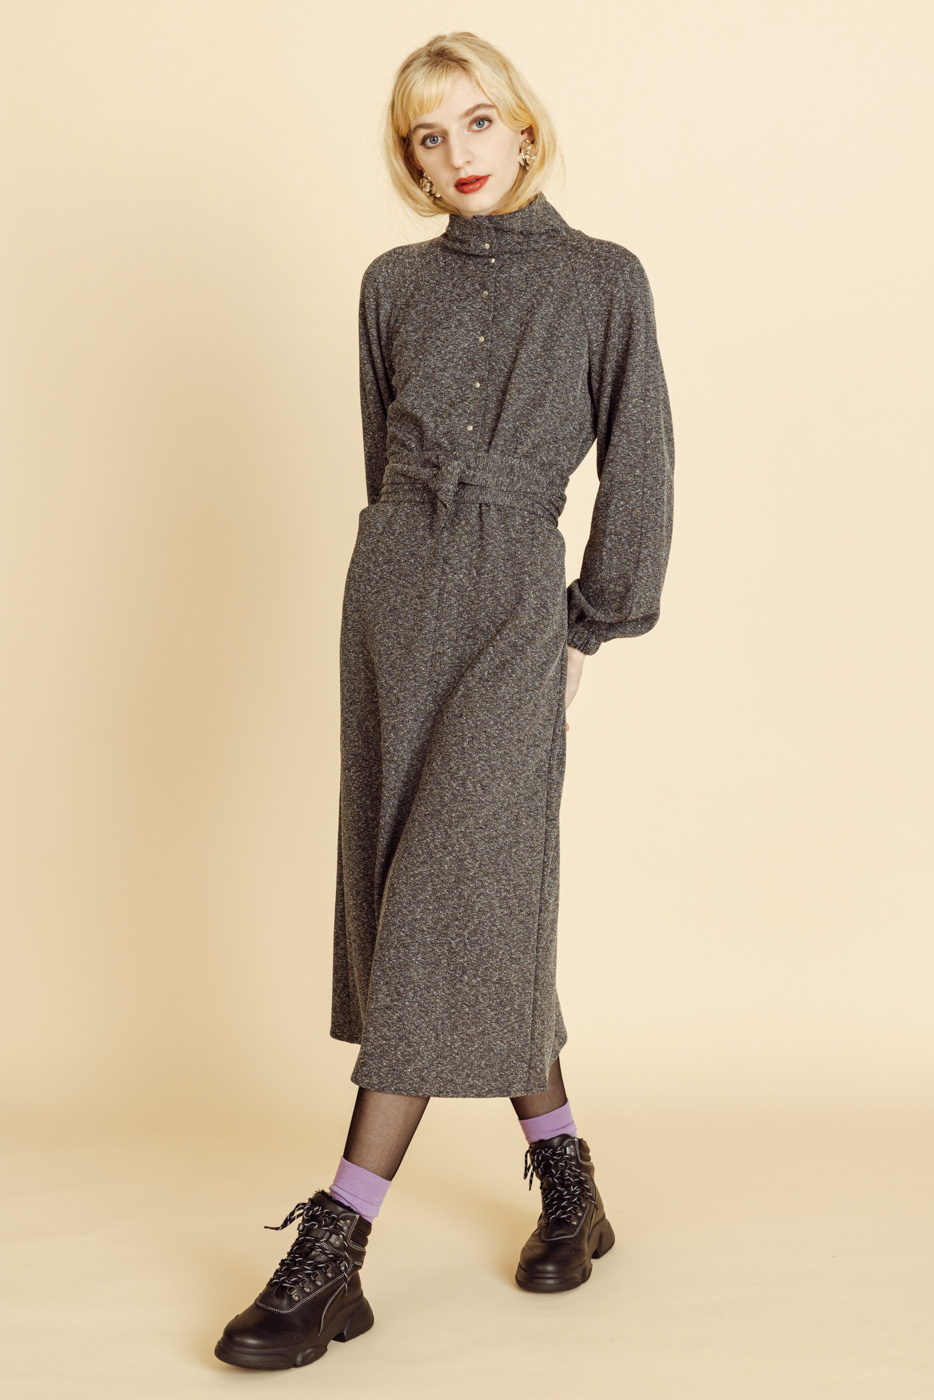 Pfeffer Verbeek Schweizer Modedesign Laufmeter Onlineshop Kleid